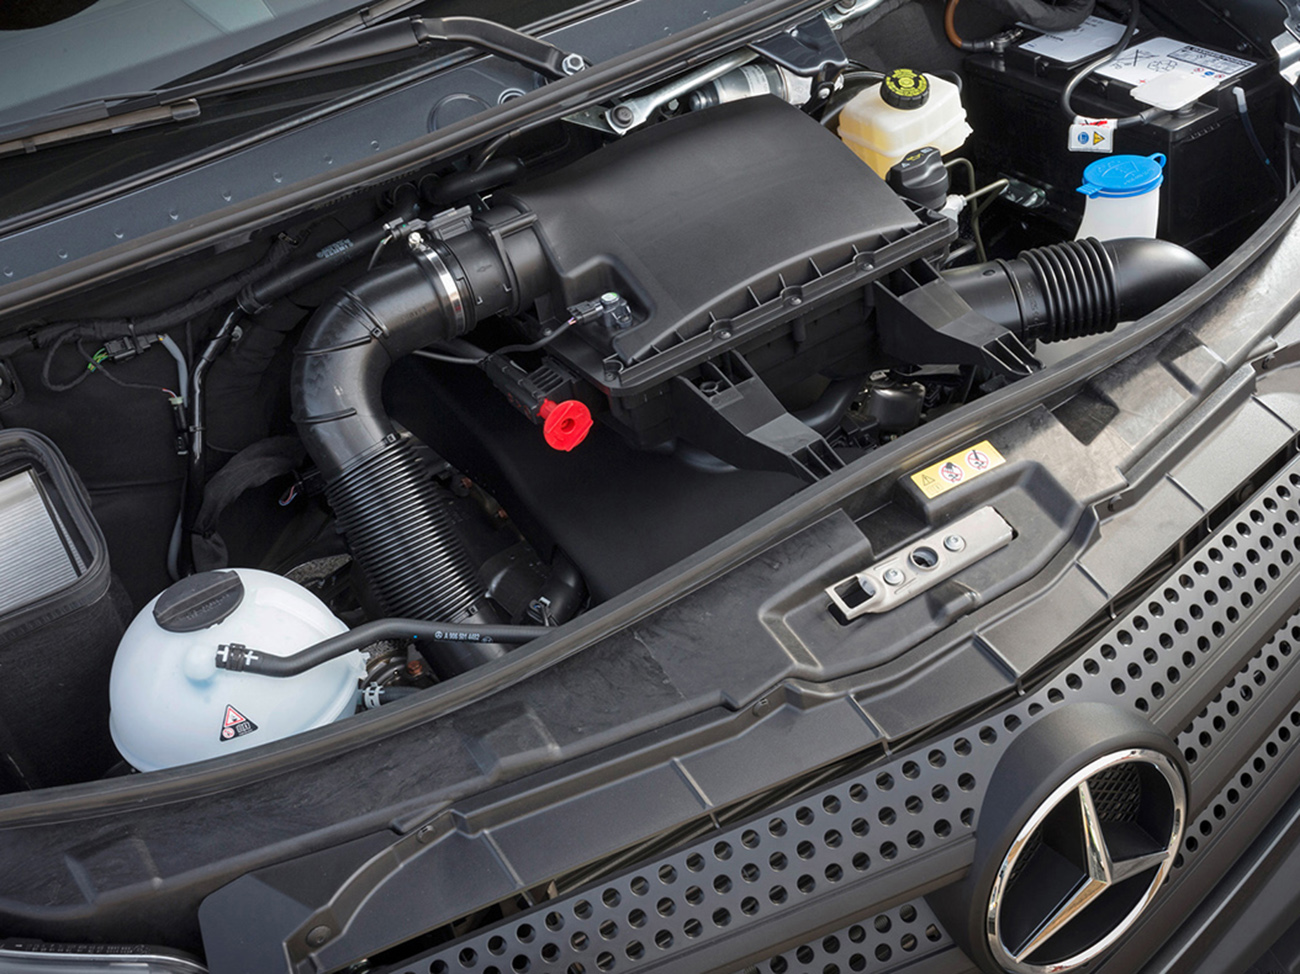 Mercedes двигатели | Маркировка, модельный ряд | Техноактив